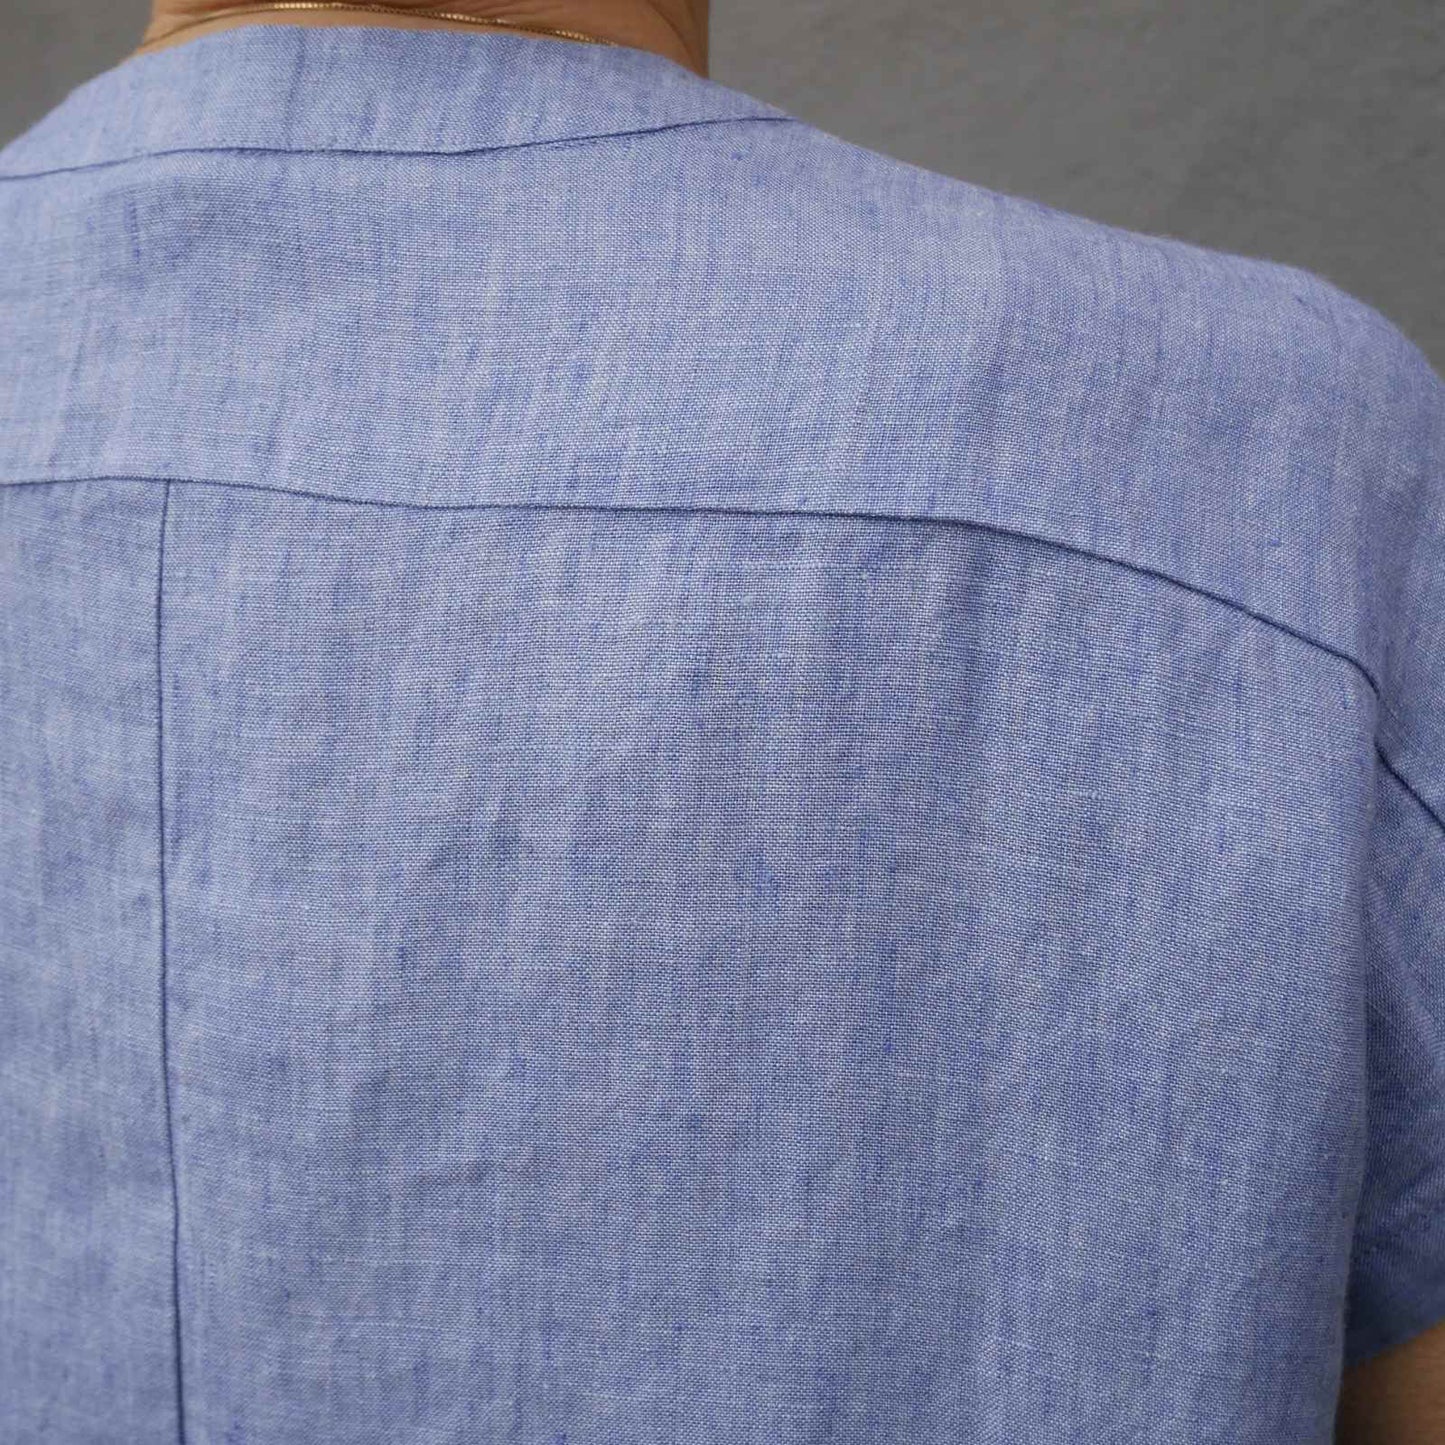 Nærbillede af meleret hør stof på lyseblå bluse